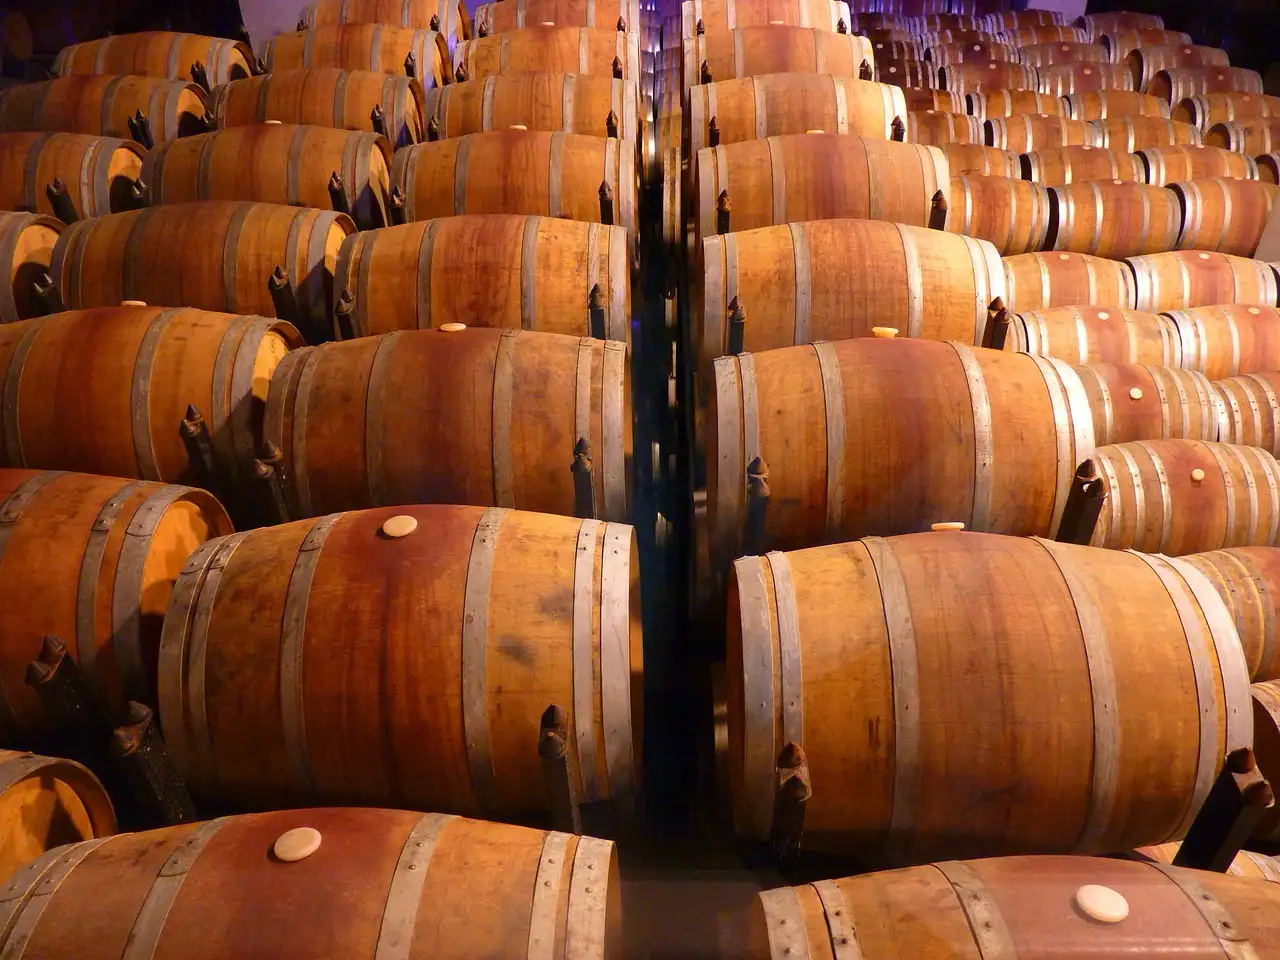 Historia del Vino: viaja a través de siglos de historia y descubre cómo el vino ha evolucionado y moldeado las sociedades alrededor del mundo.